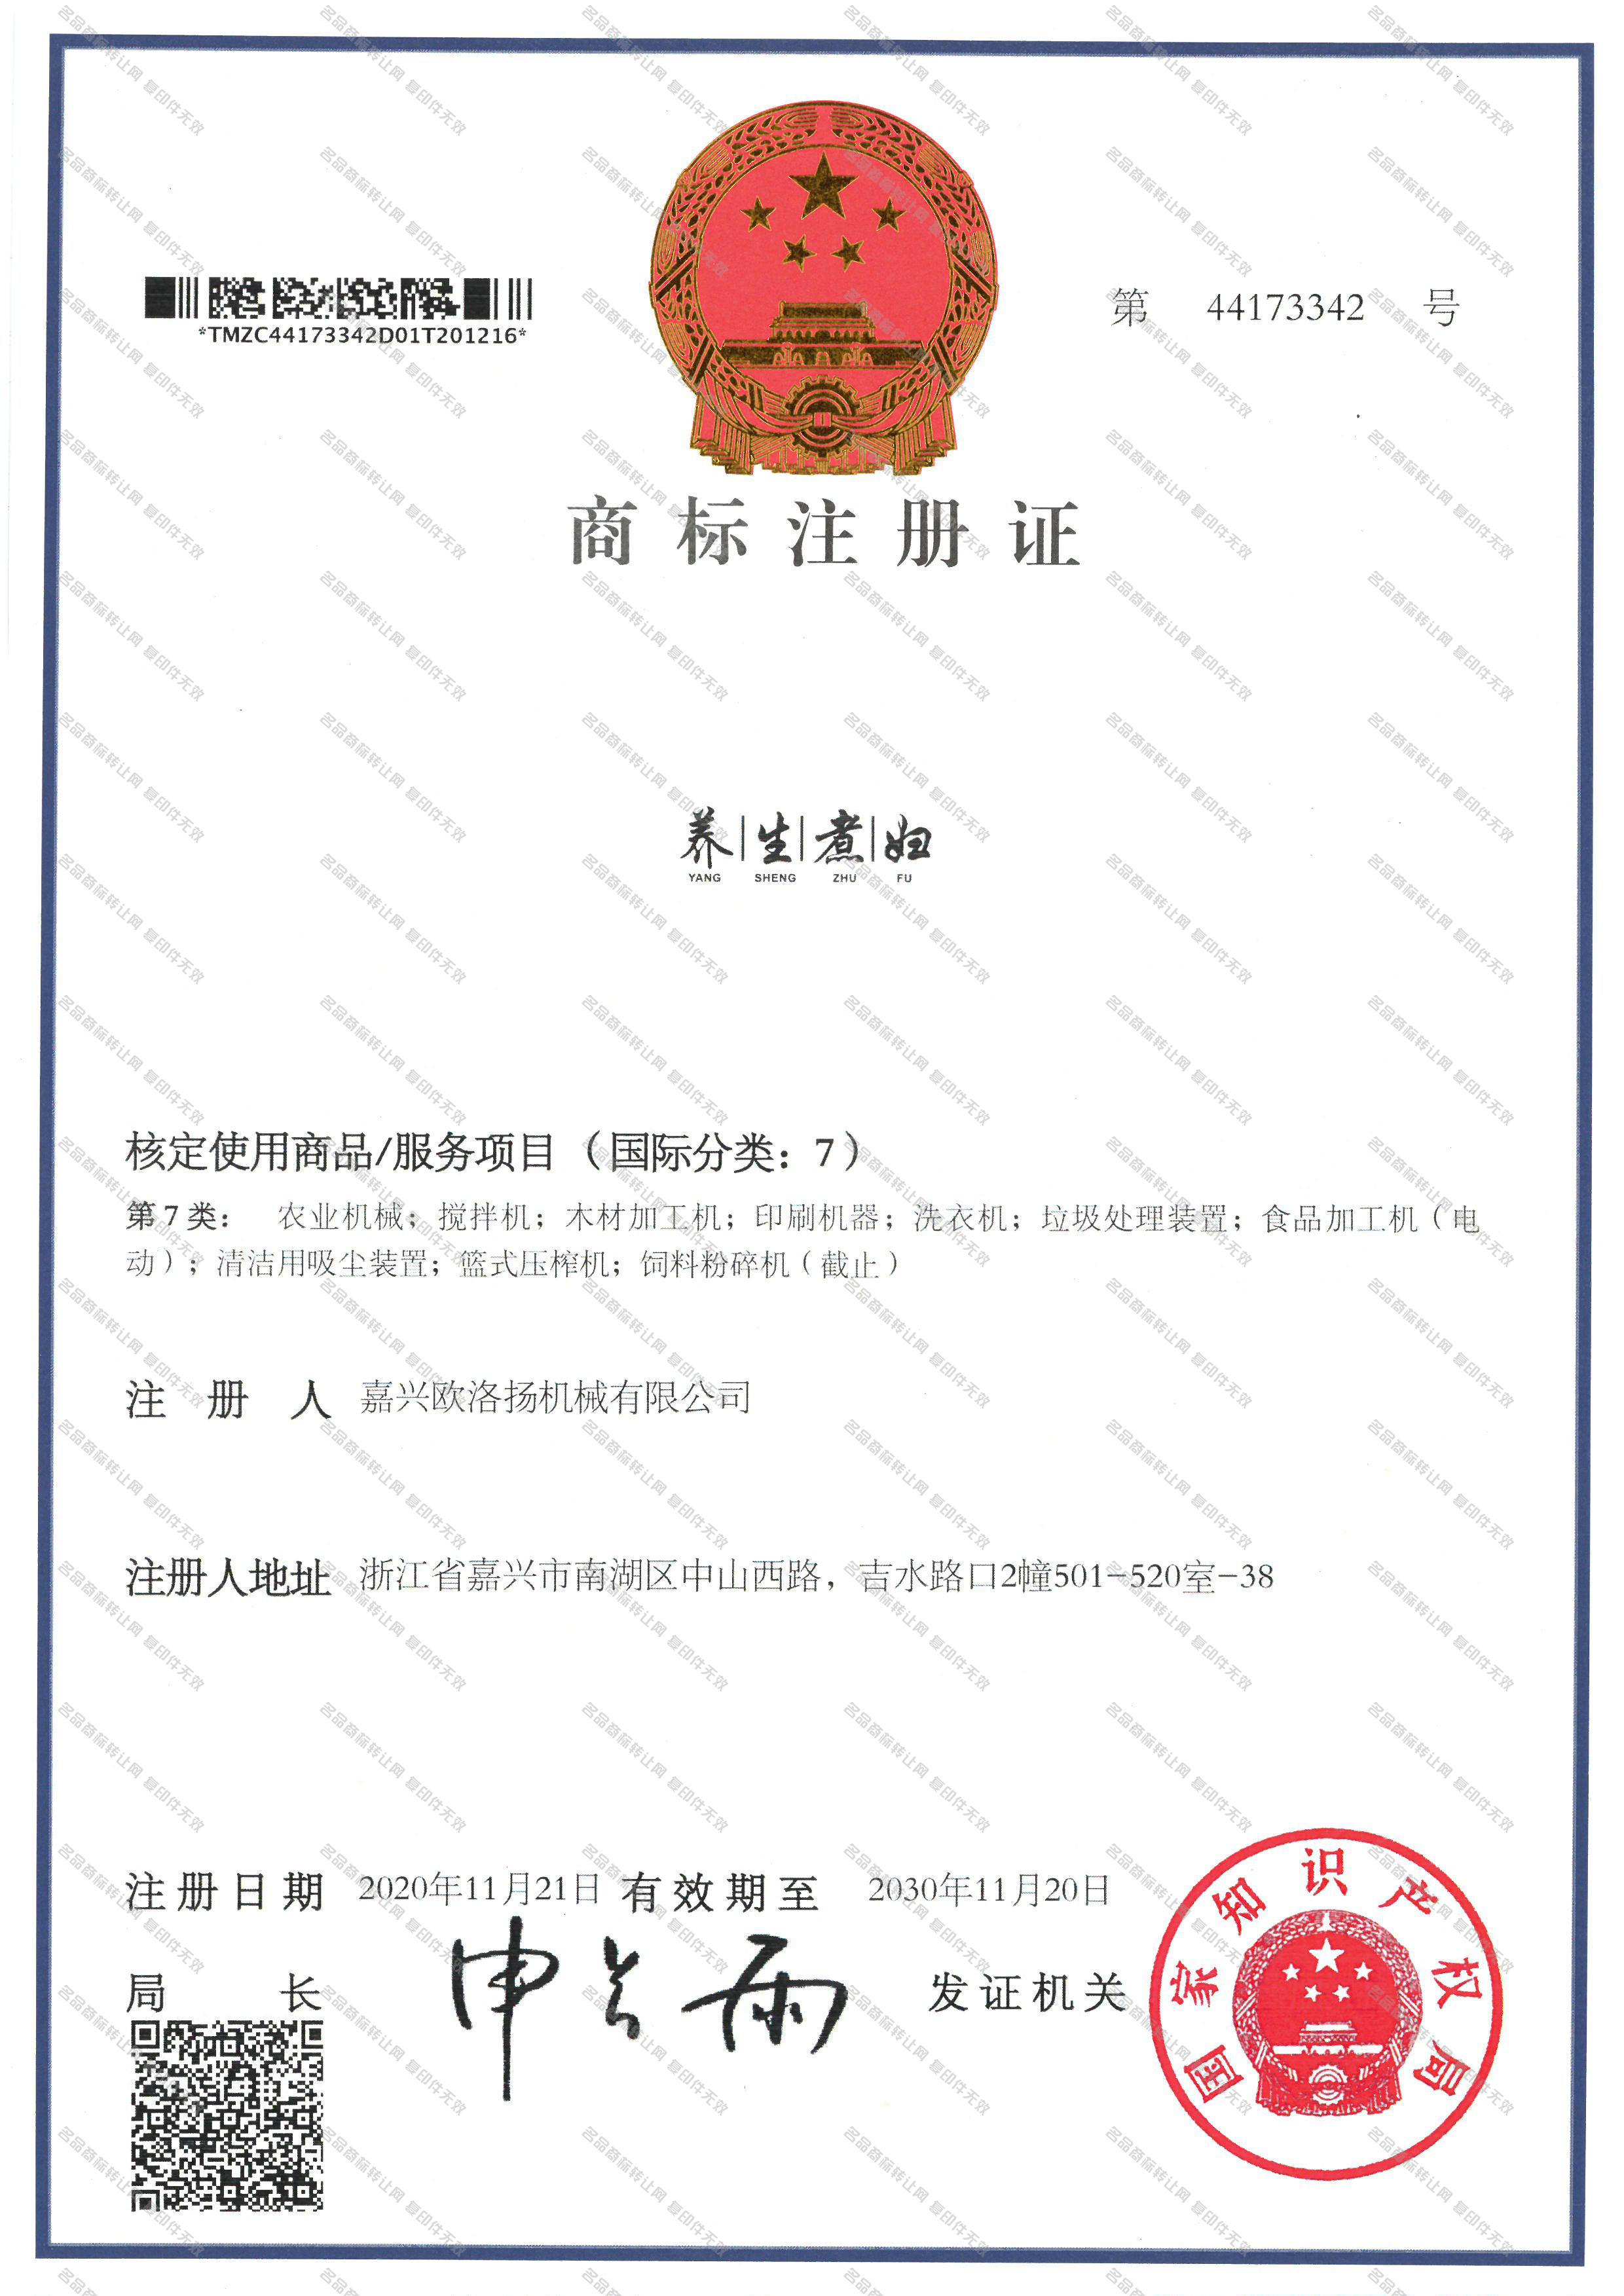 养生煮妇 YANG SHENG ZHU FU注册证